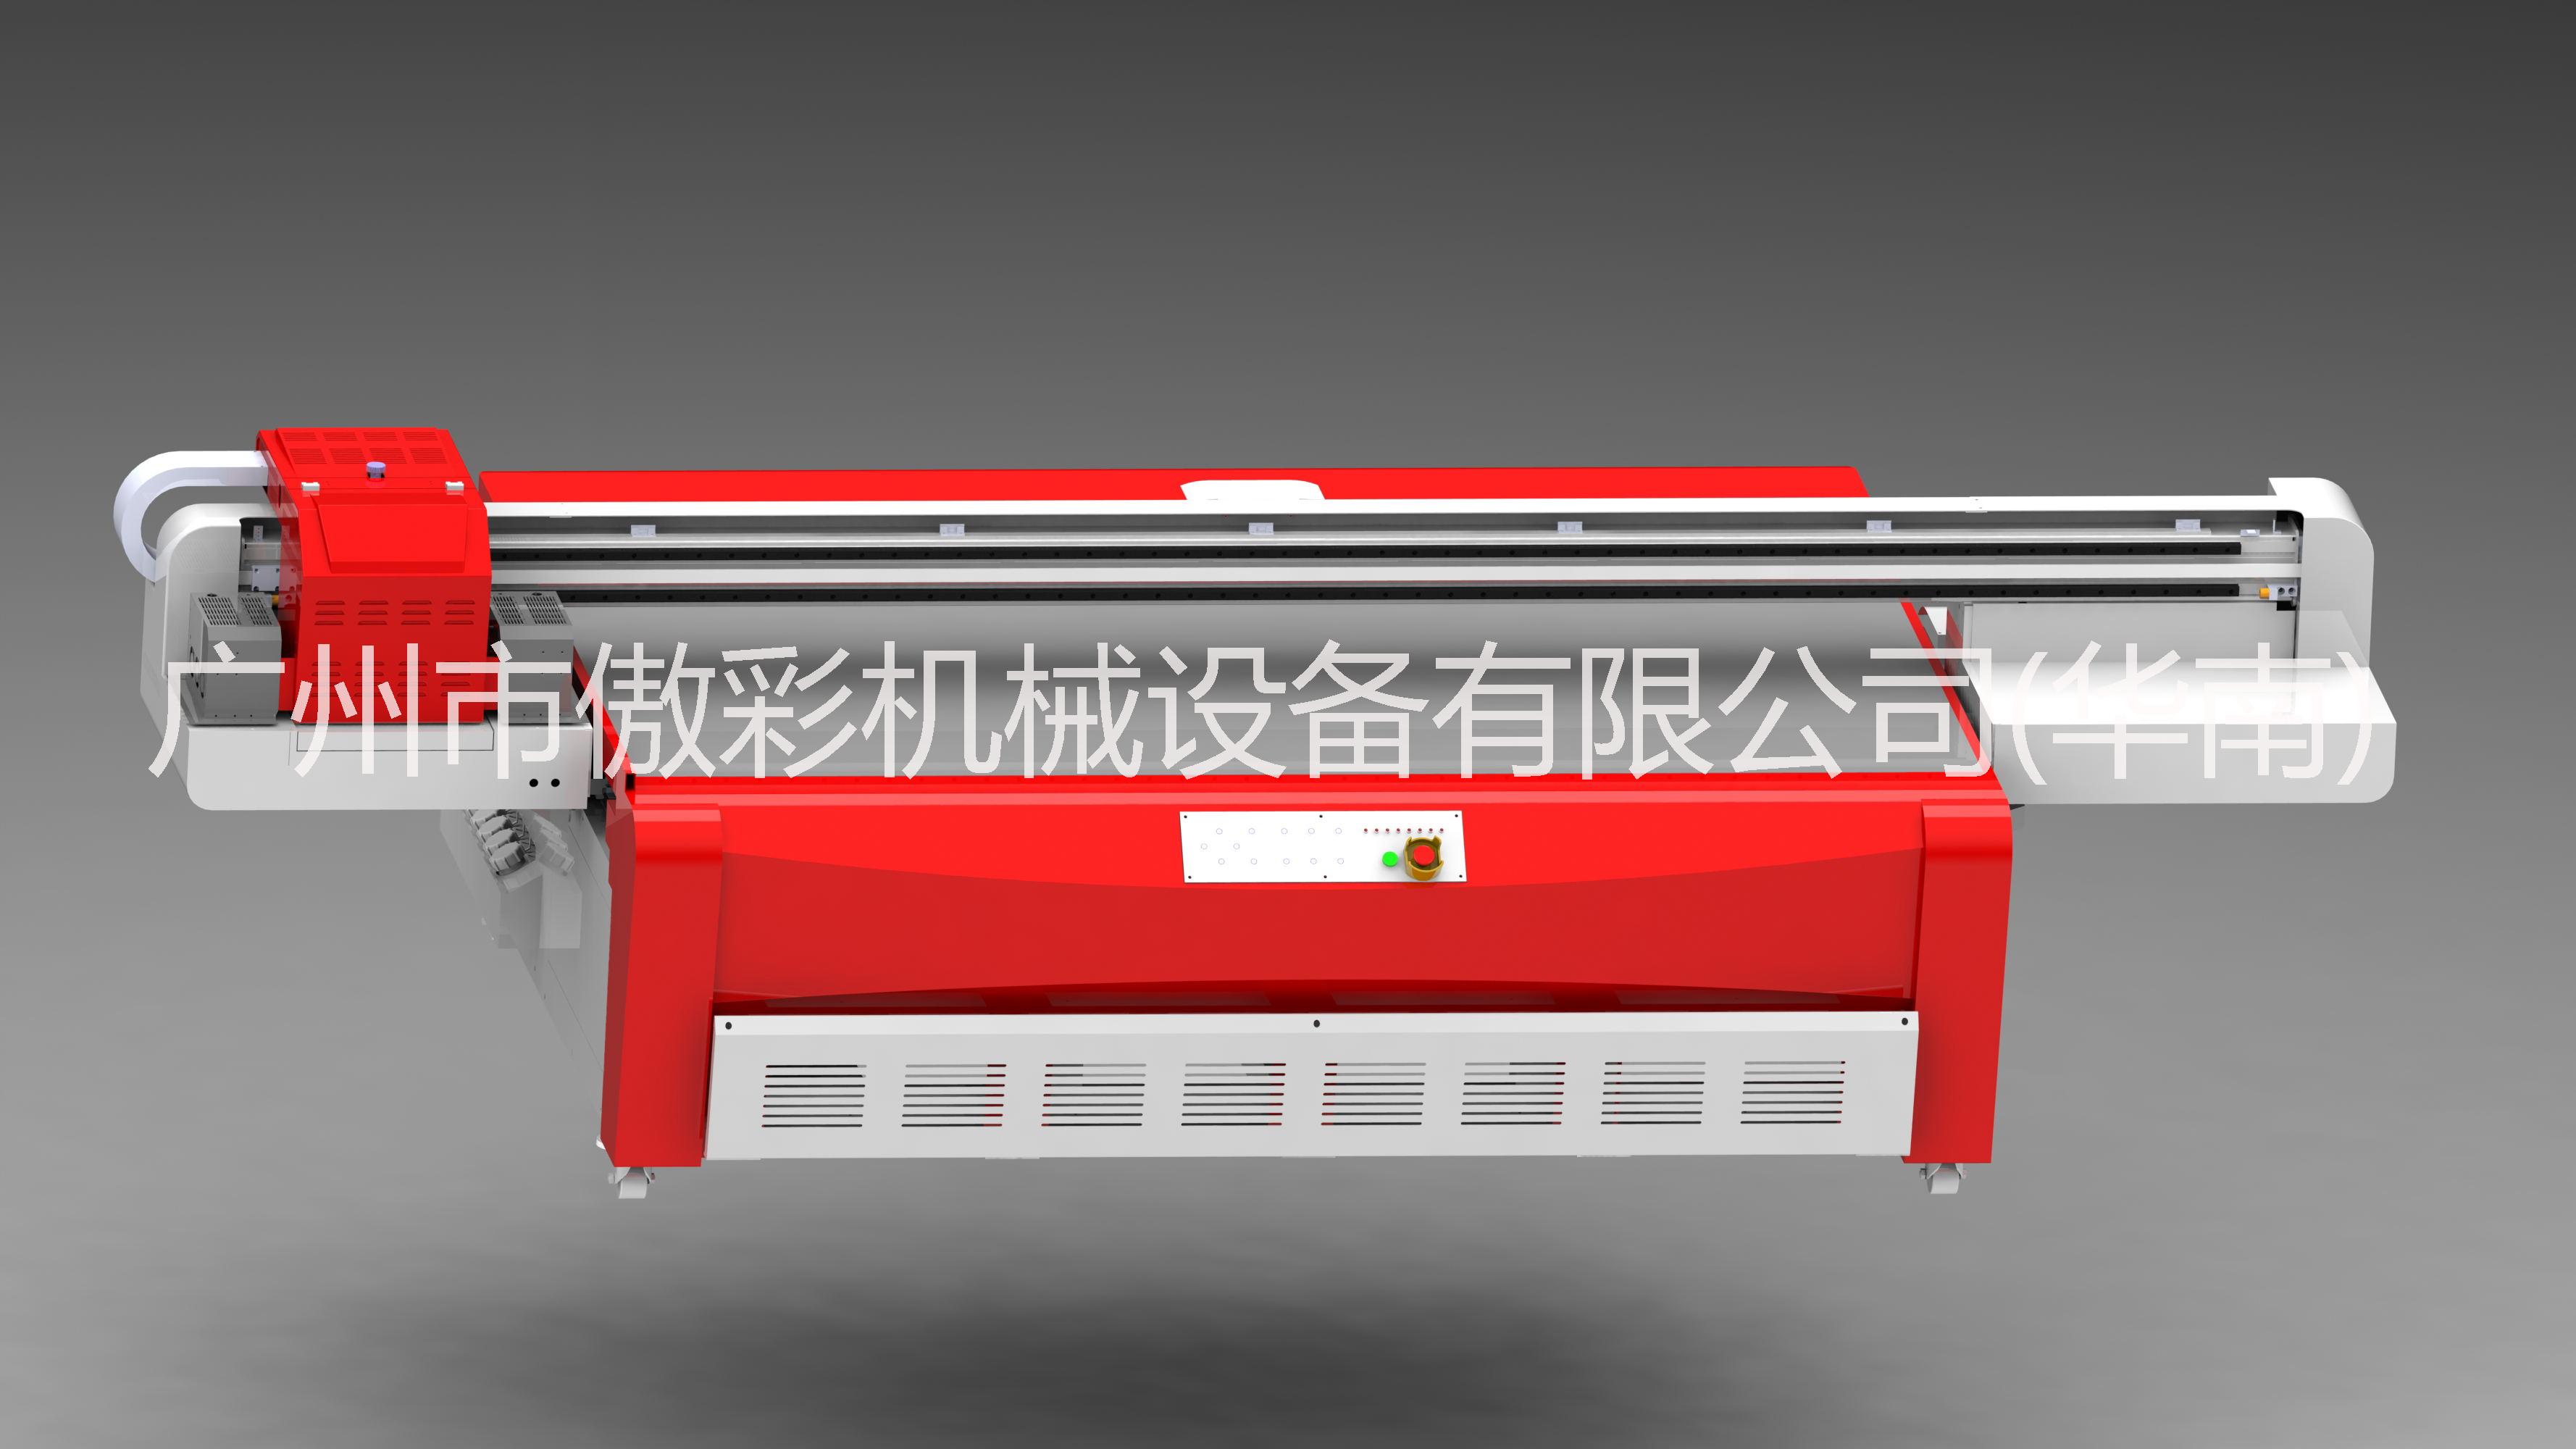 供应万能打印机东芝2513可用于各种平面彩印图片